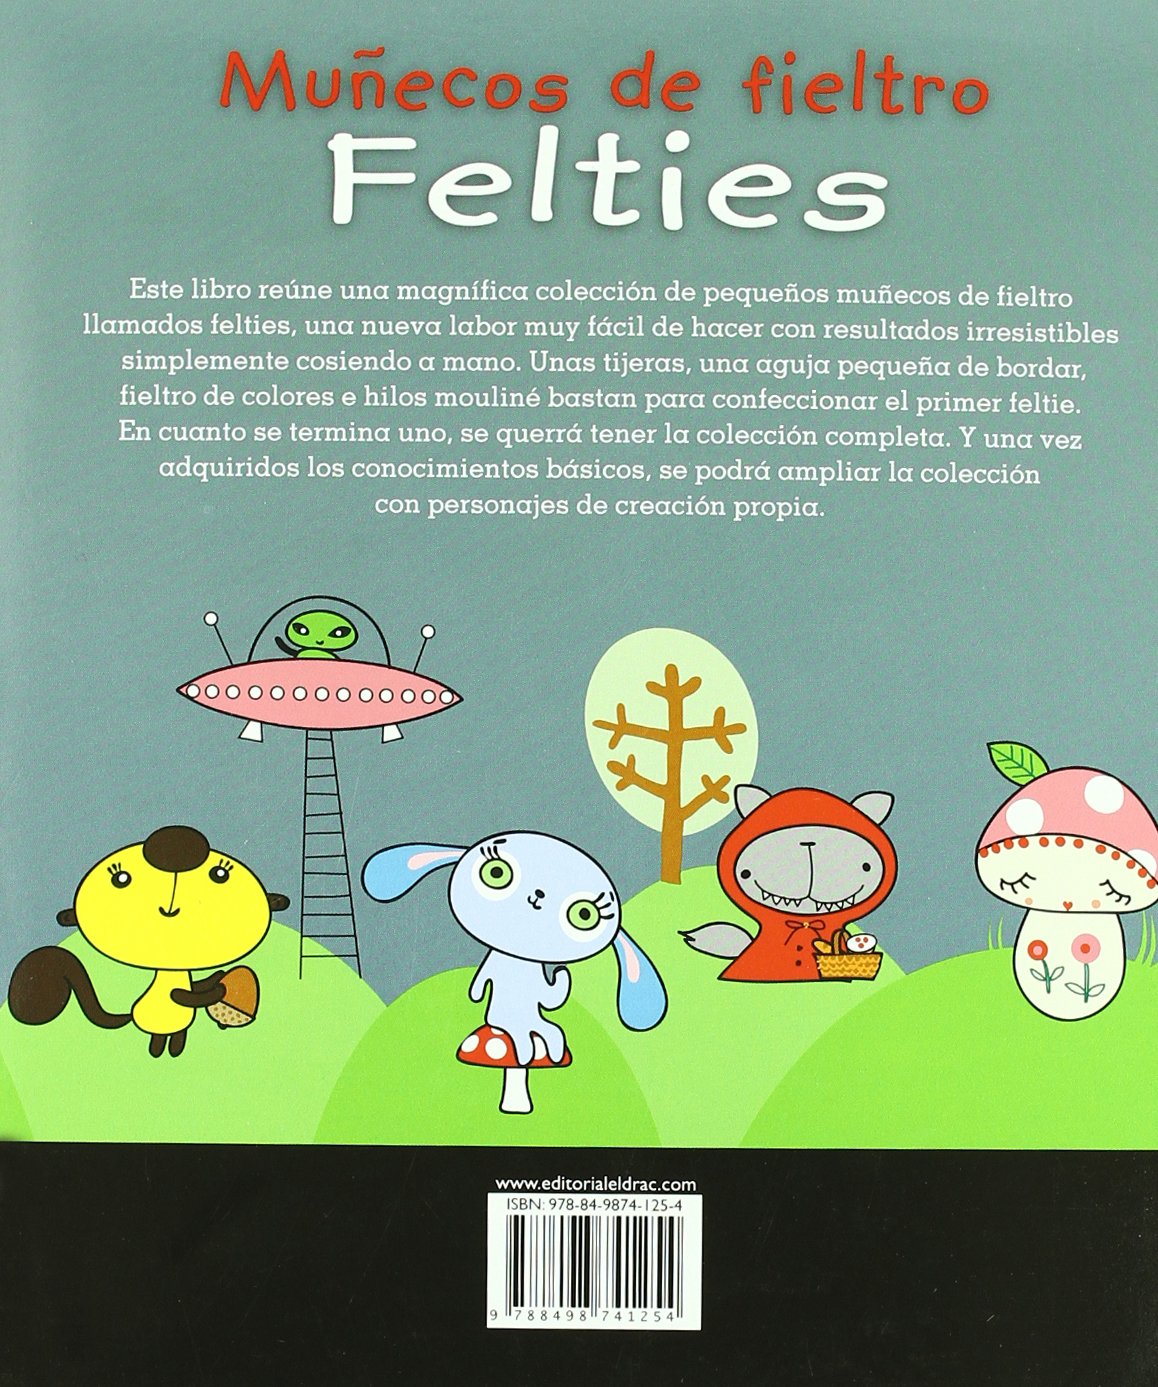 Libro manual con proyectos de muñecos de fieltro y patrones 2